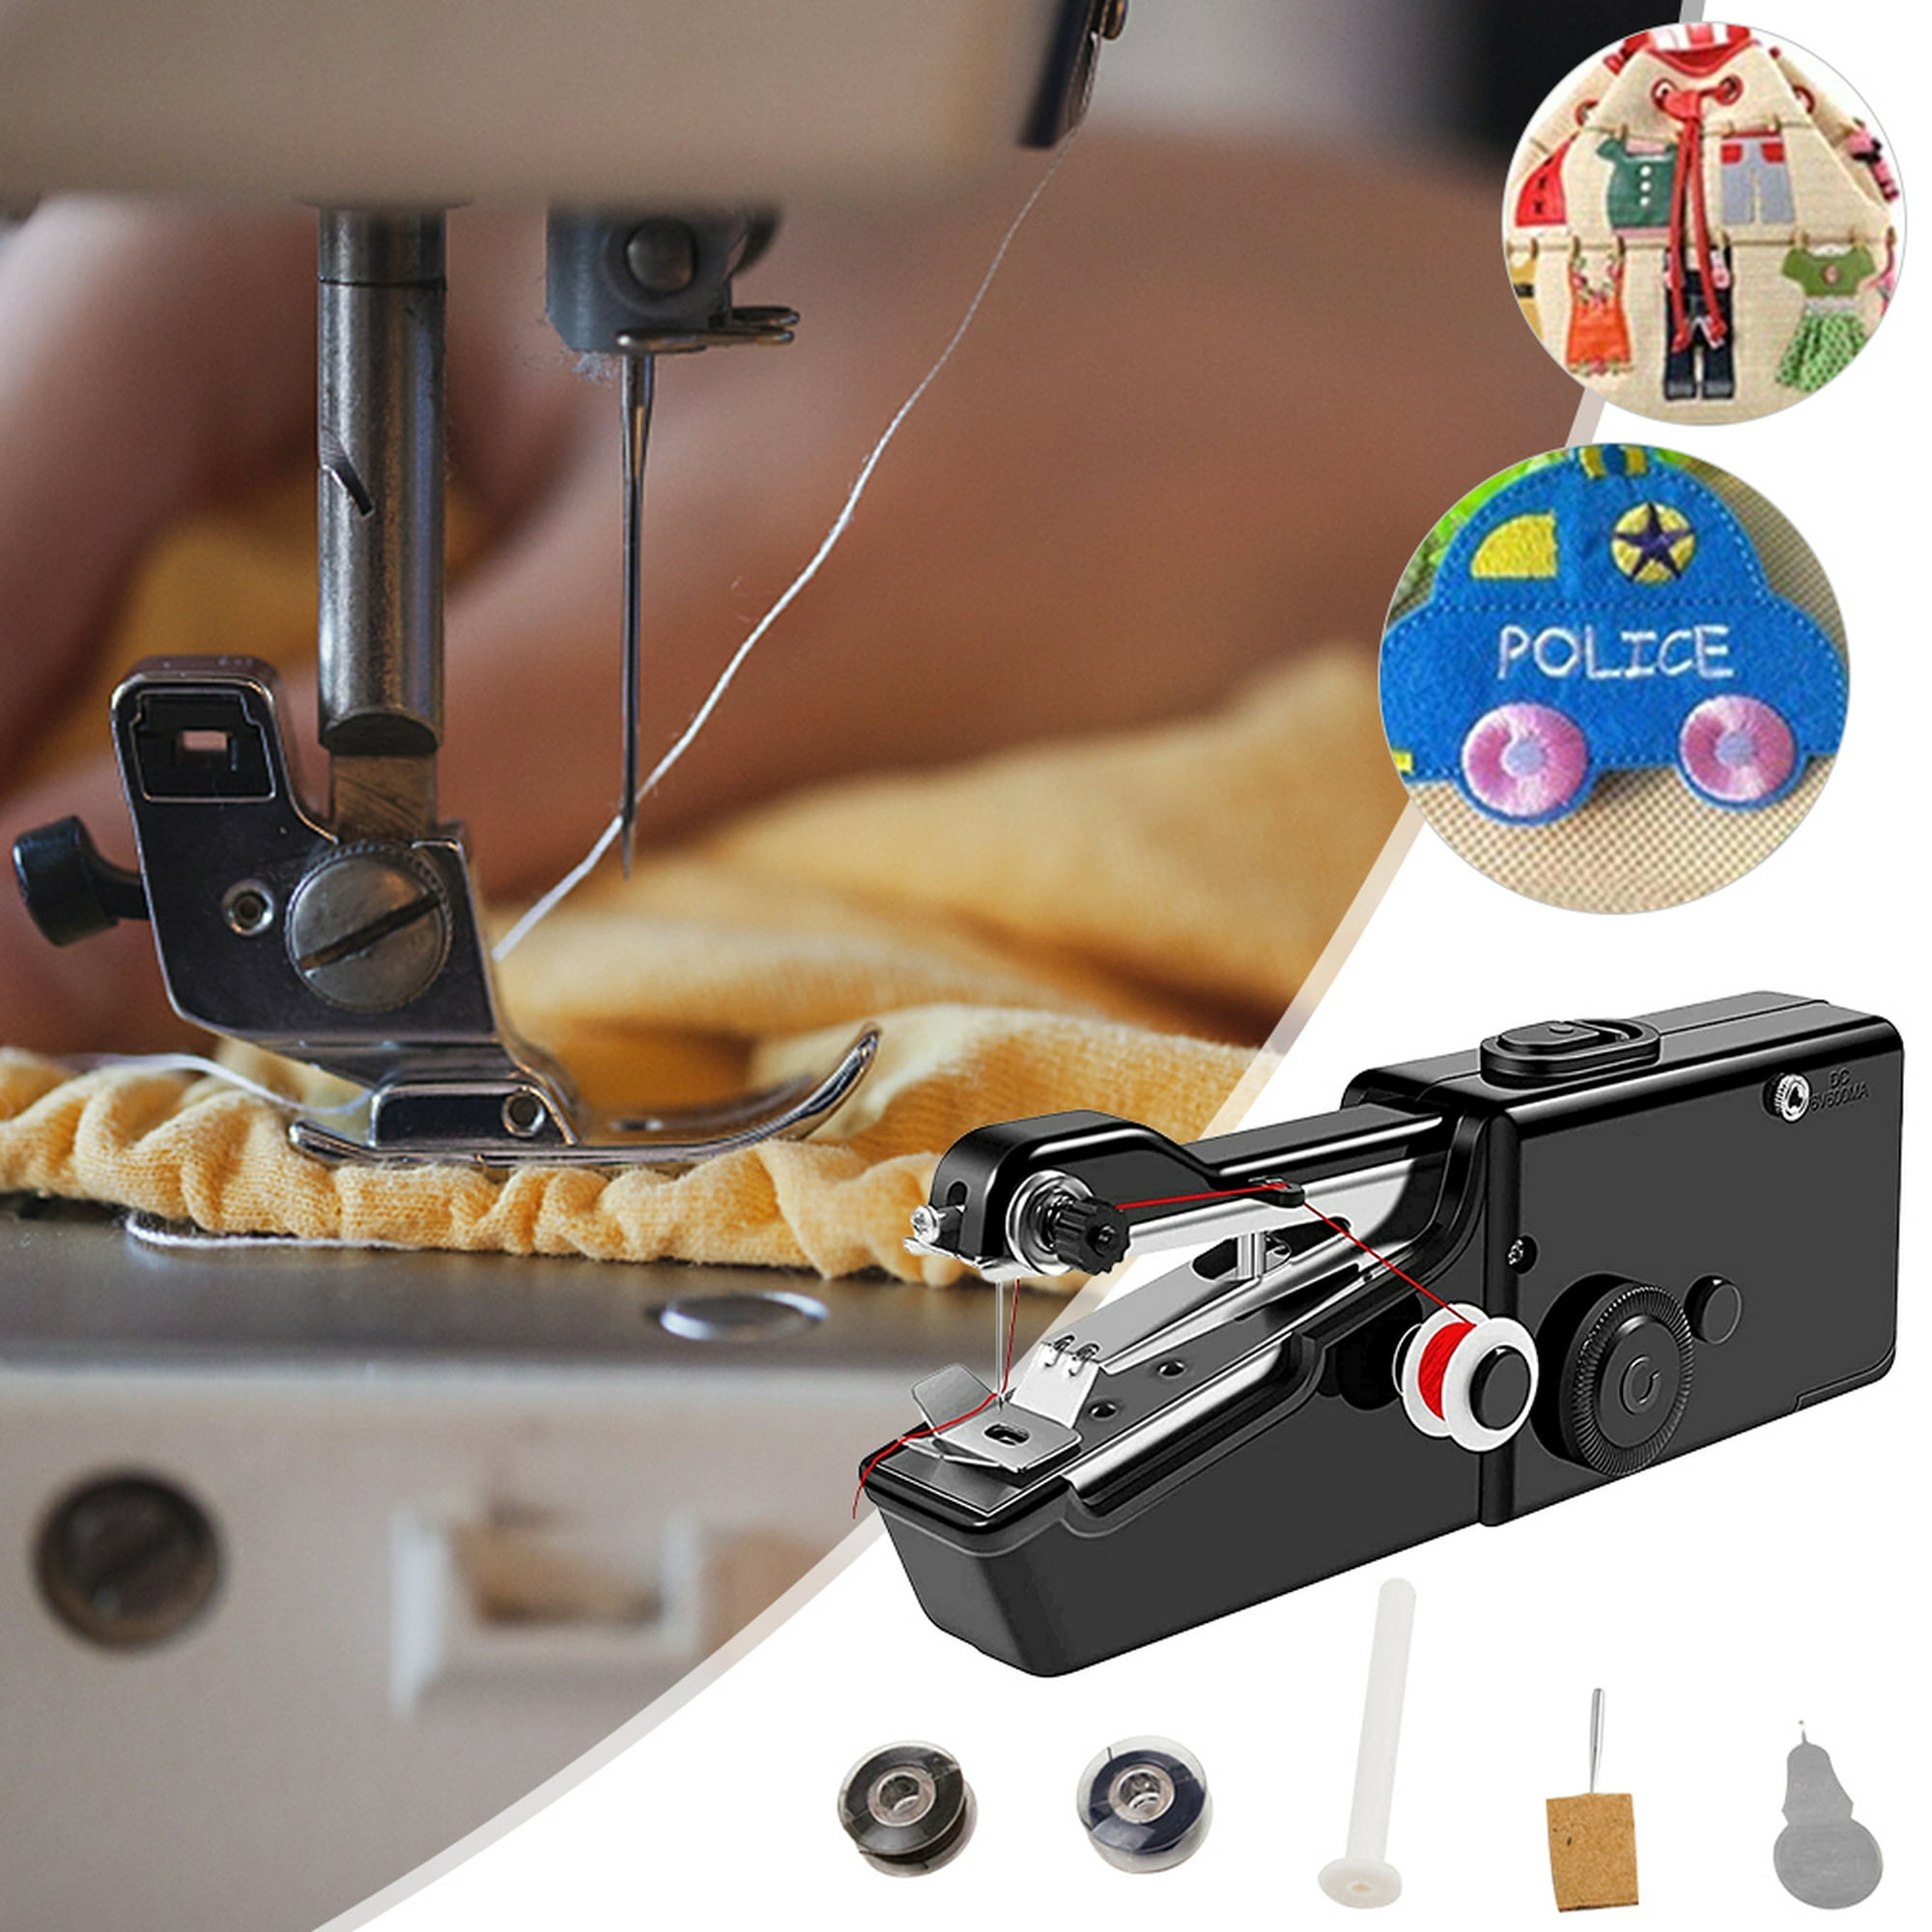  Máquina de coser de mano, mini máquina de coser para  principiantes y adultos, costura rápida, máquina de coser portátil con  suministros de costura adecuada para el hogar, viajes, bricolaje (blanco) 